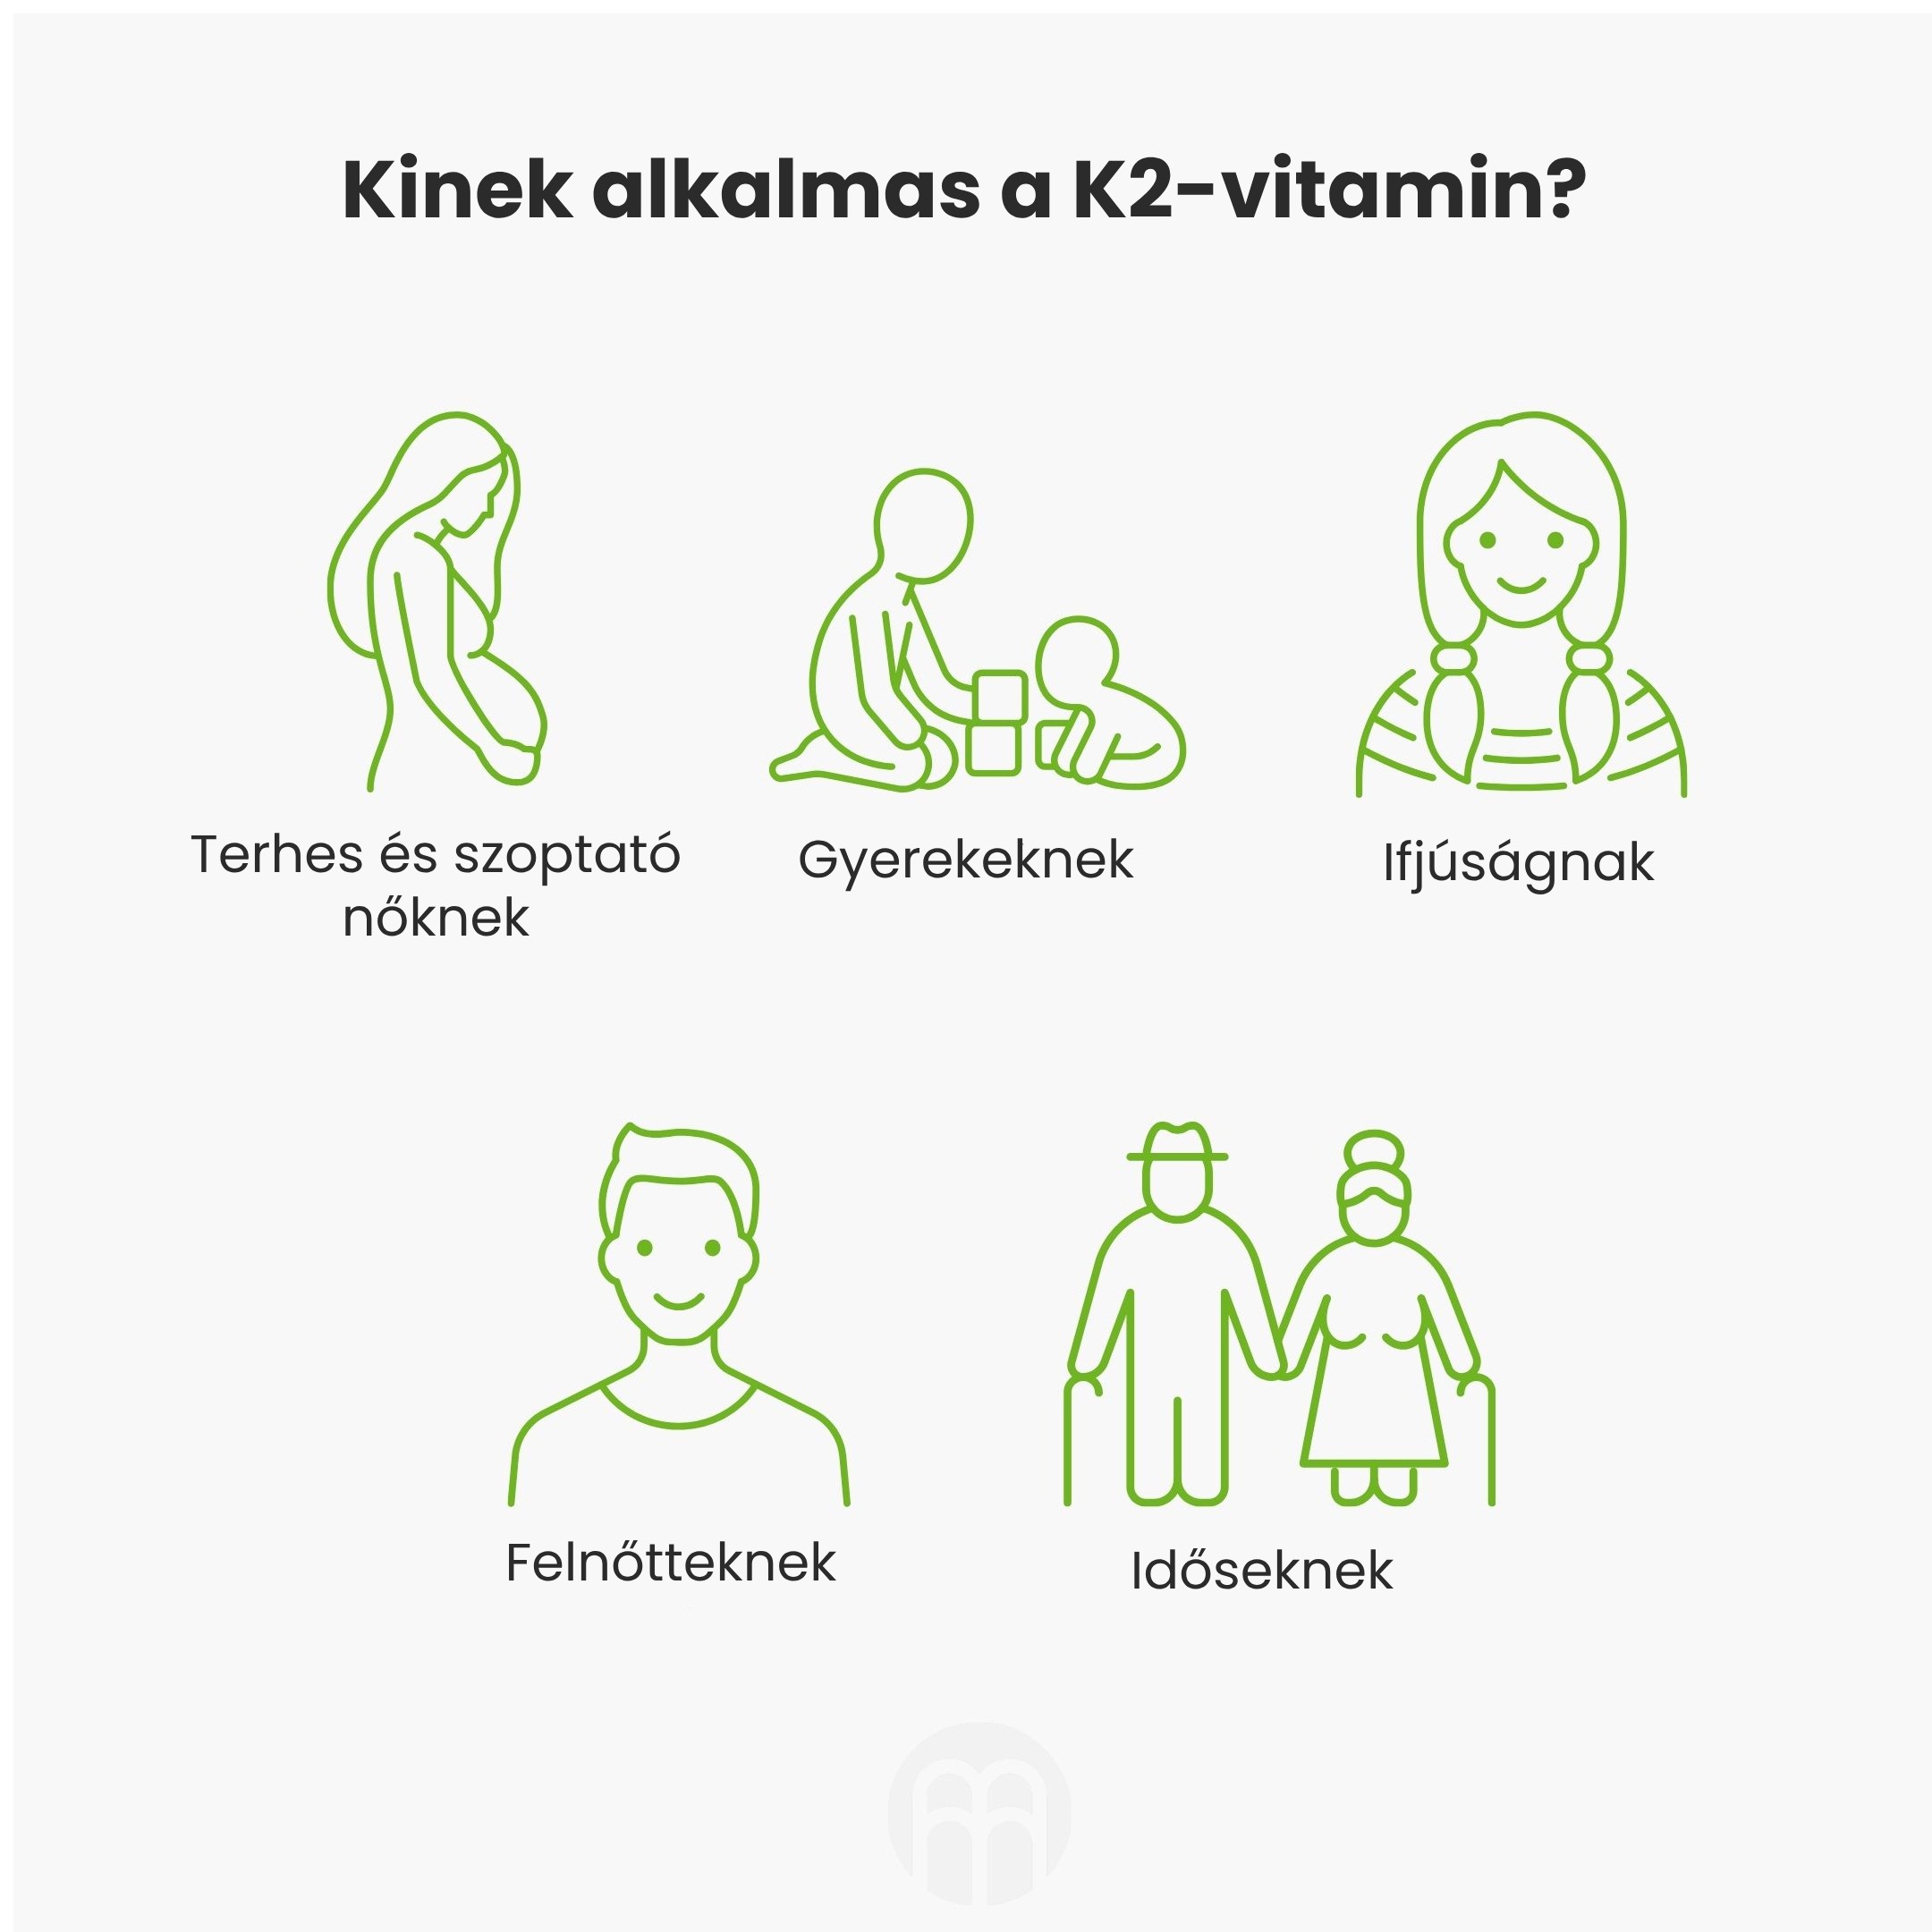 K2-vitamin MK7 all-trans K2VITAL®DELTA. Mi a különbség a hagyományos K2-vitaminoktól?